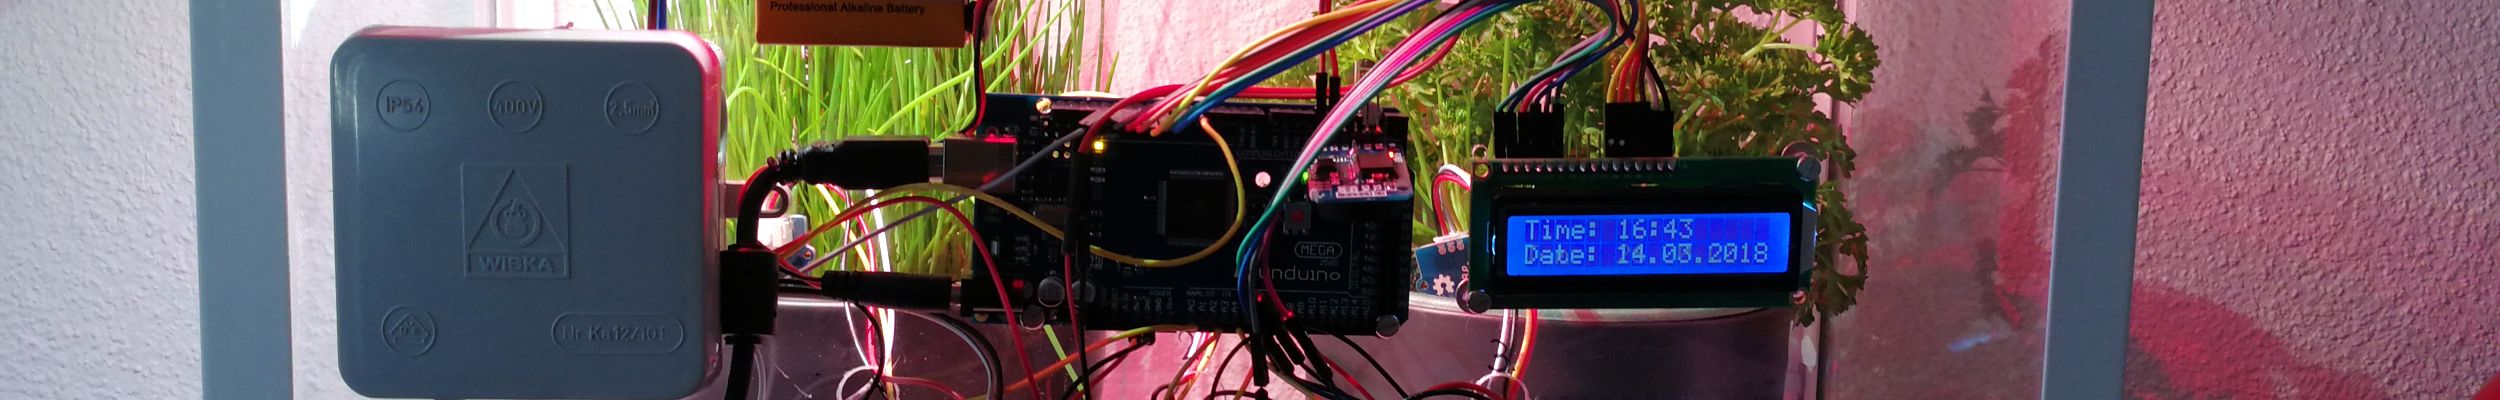 Computing-Plattform Arduino als Gärtner